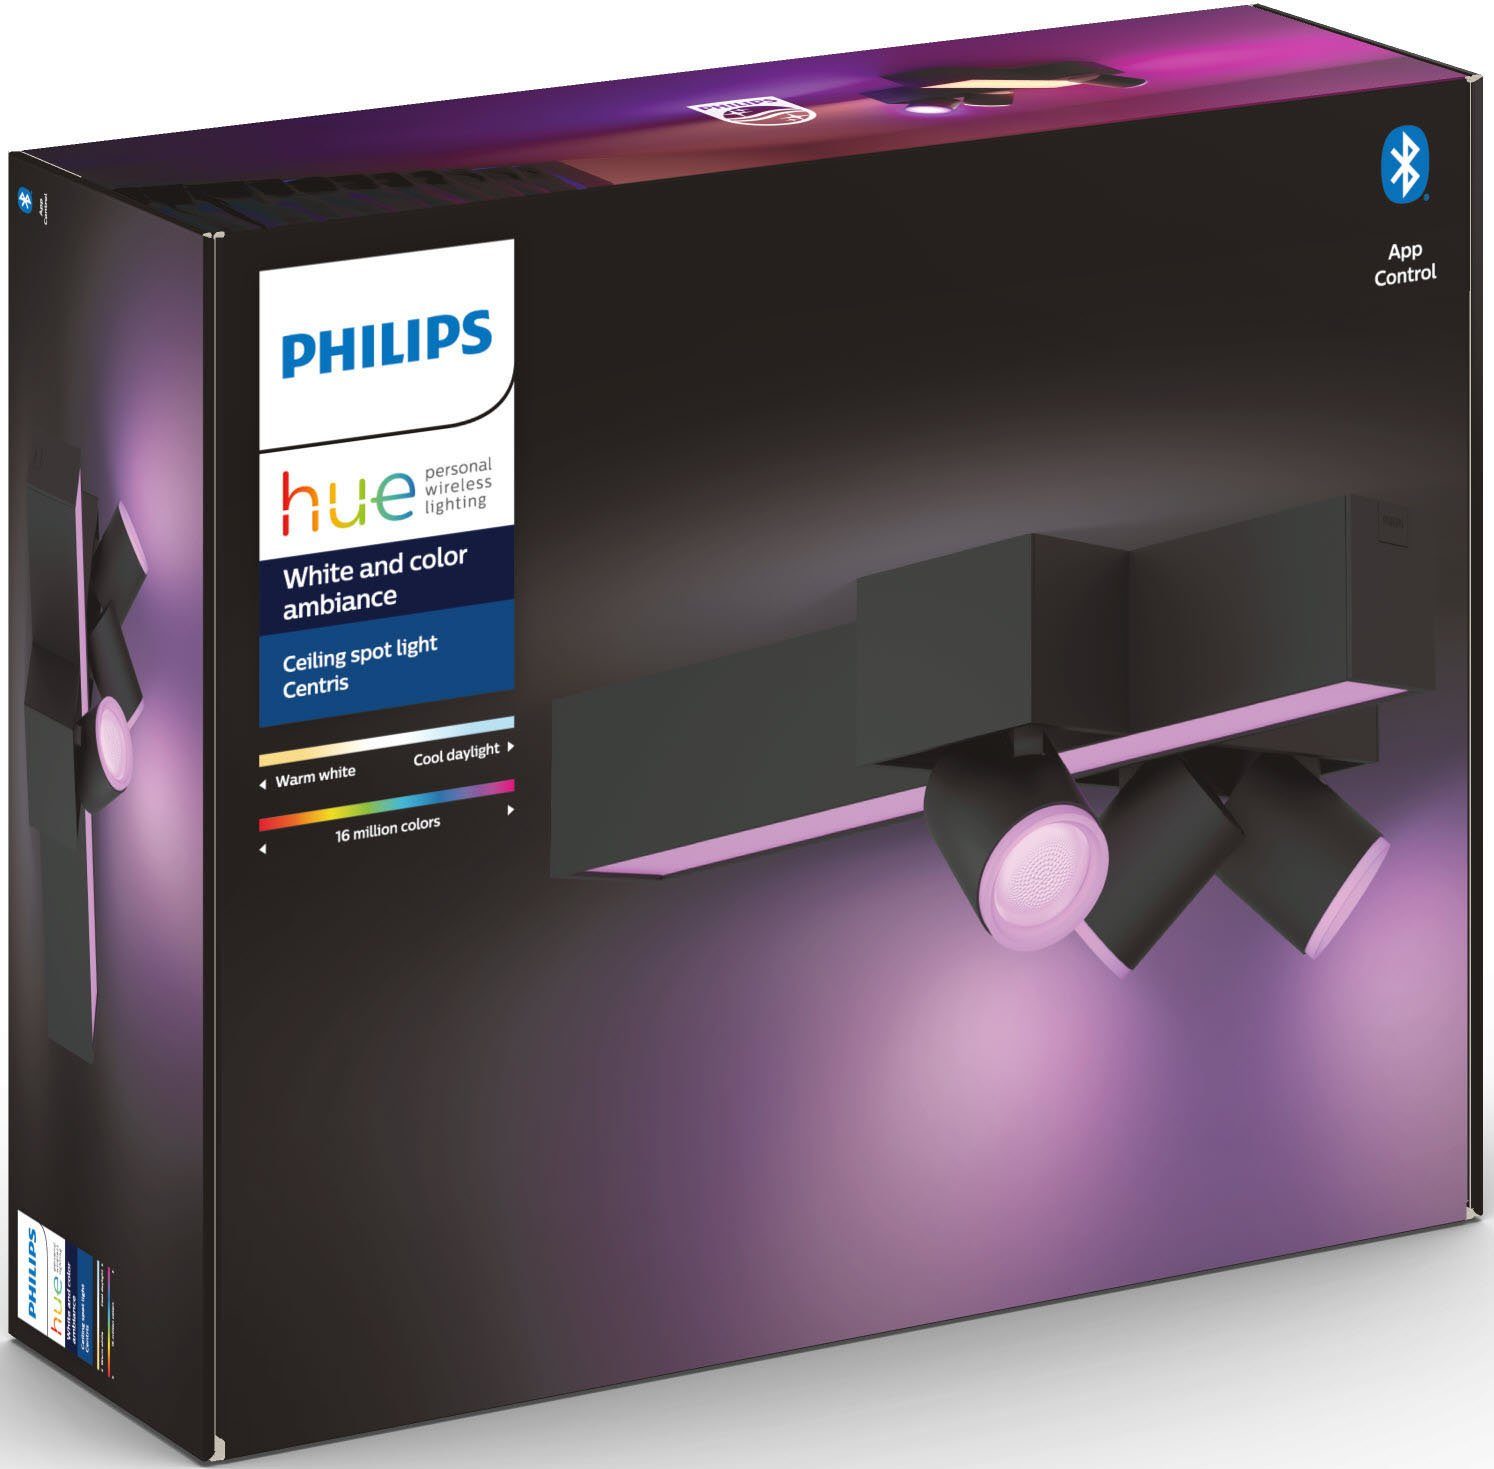 Individ. wechselbar, App, Deckenspot anpassbar mit Lampeneinstellungen einzeln Hue der LED Farbwechsler, Lampen Hue Centris, Philips LED